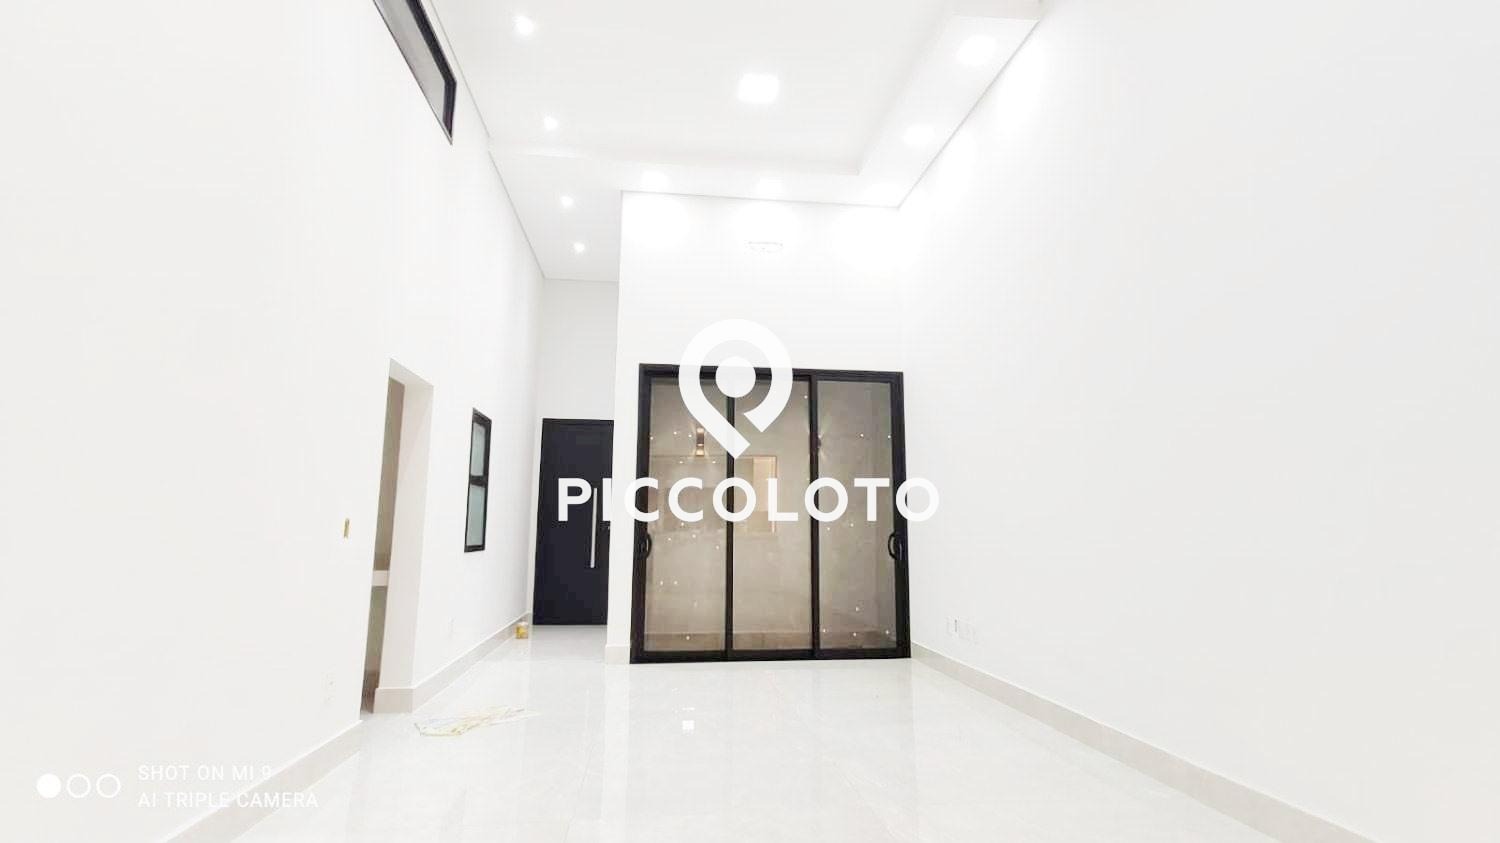 Piccoloto -Casa à venda no Jardim Recanto das Águas em Nova Odessa